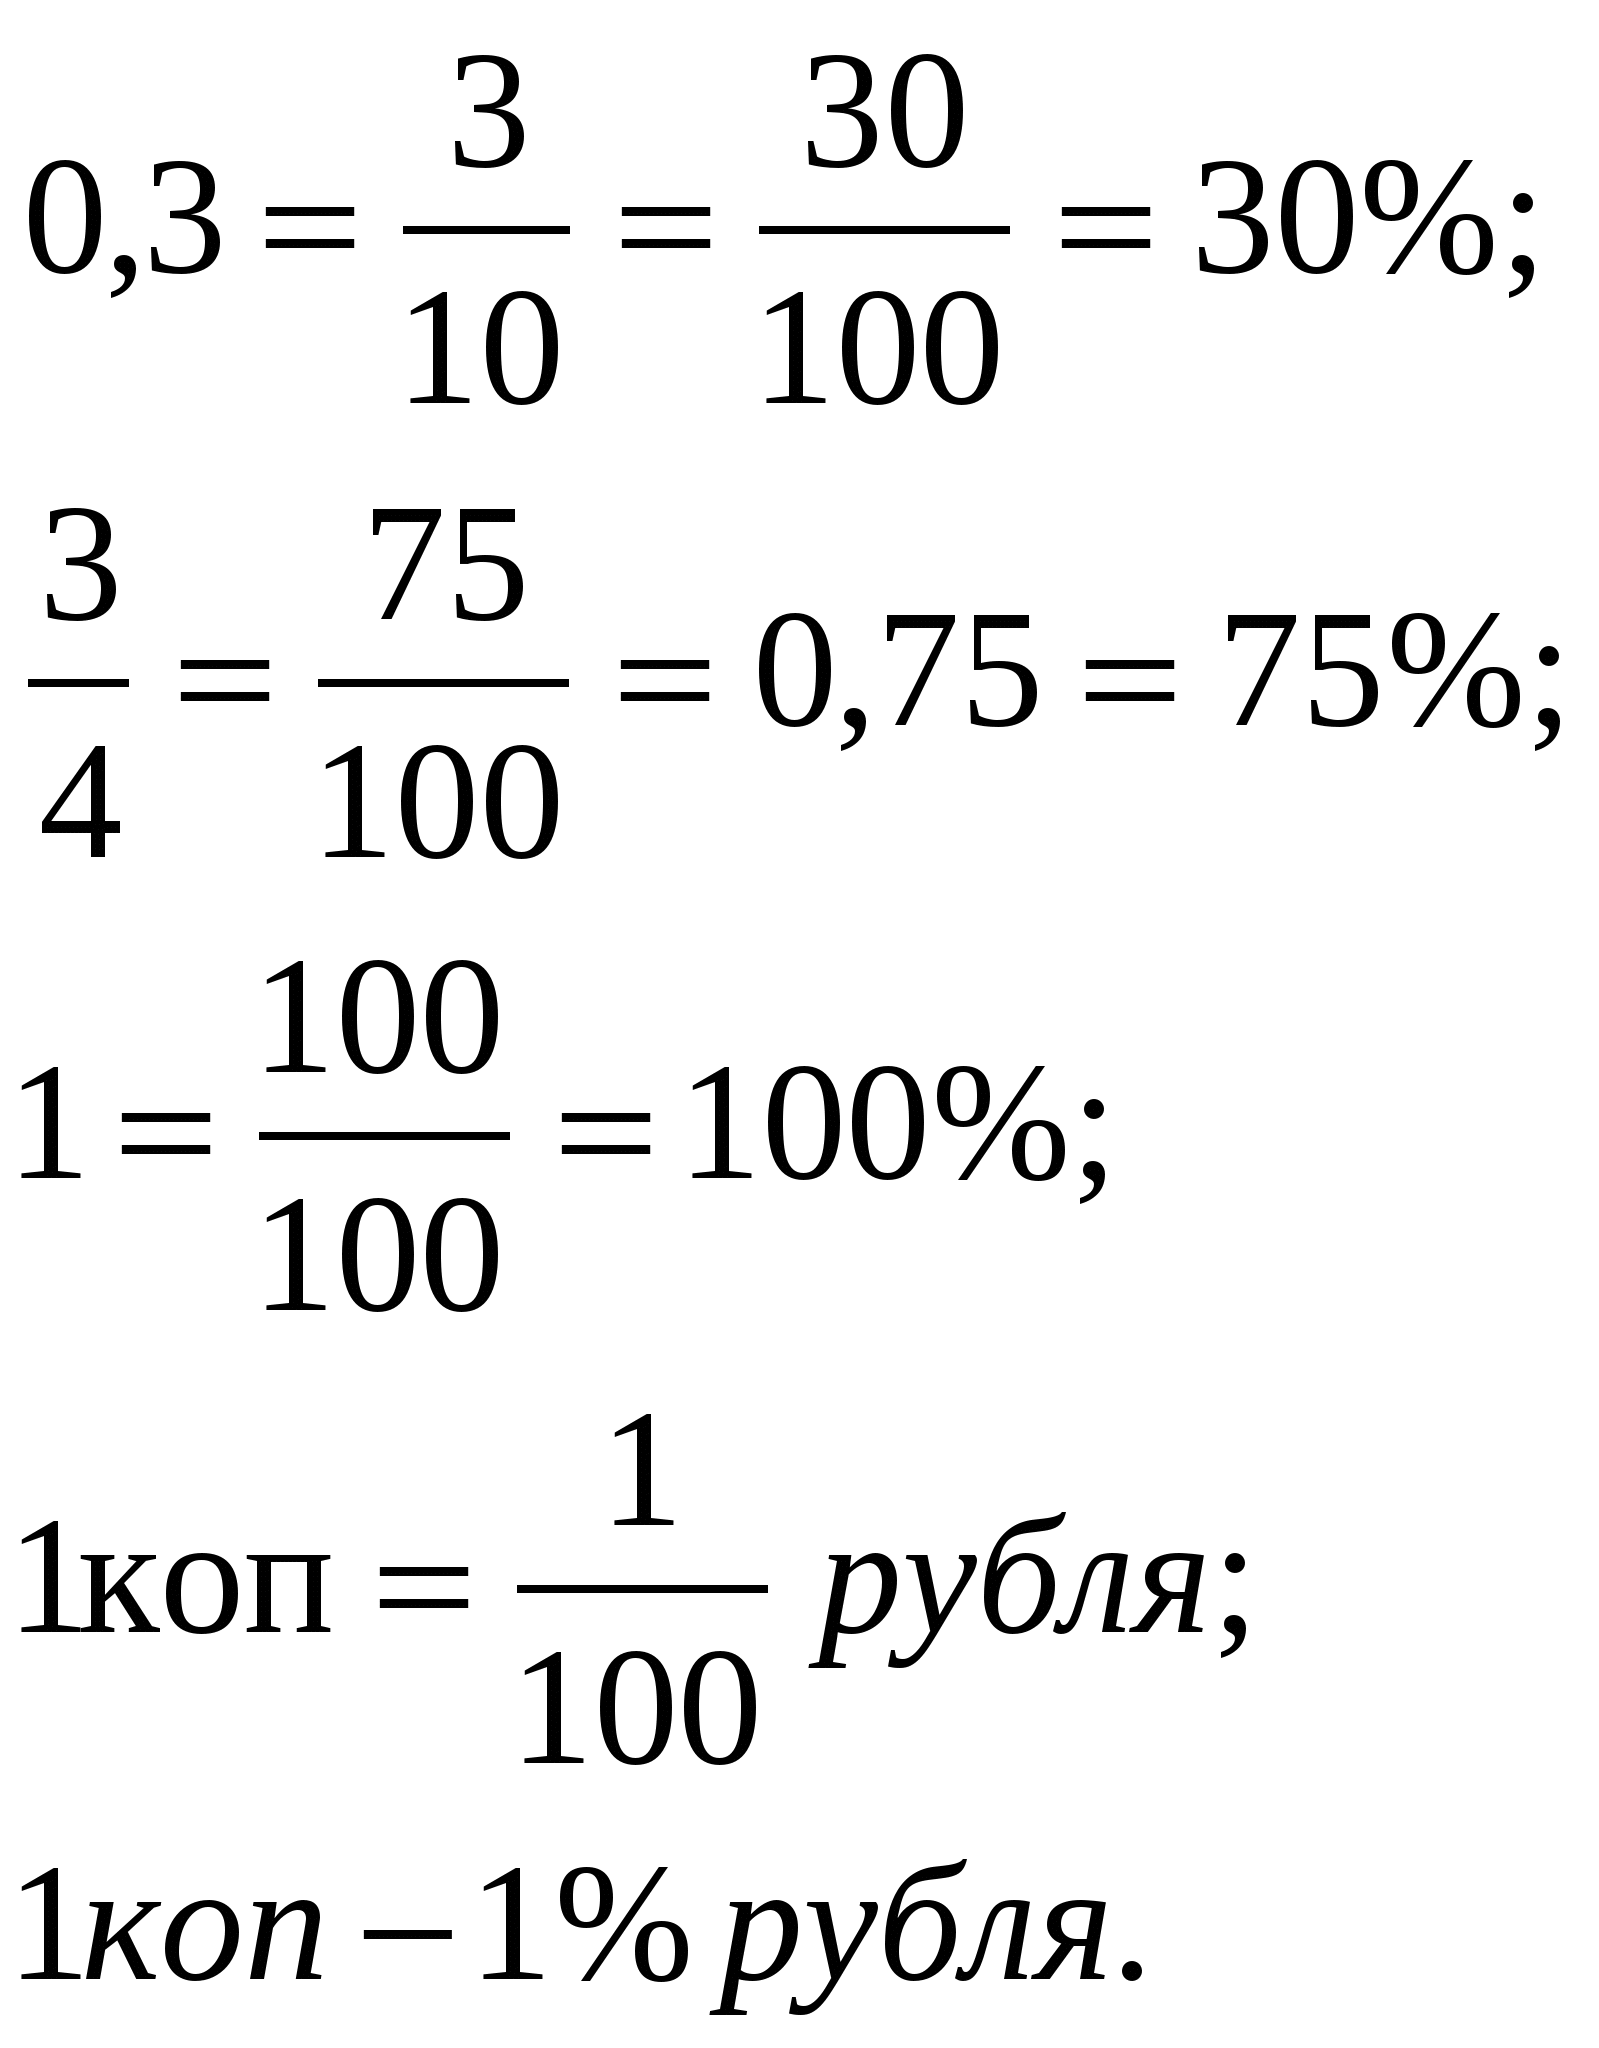 Конспект урока математики с использованием ИКТ и тестов по теме «Проценты»